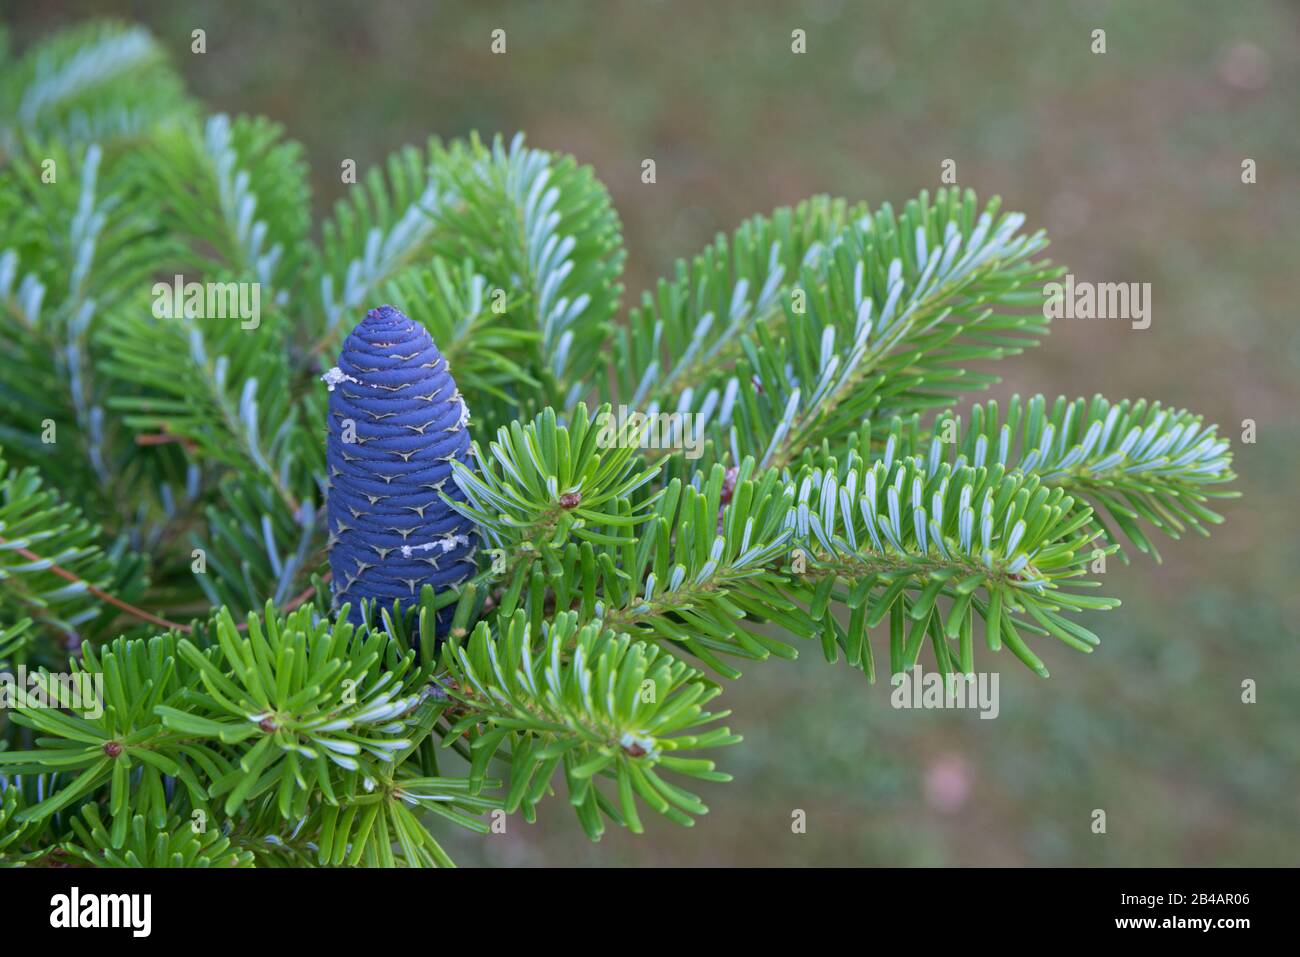 Korean fir (Abies koreana) cone on green branch. Close-up of Korean fir. Stock Photo